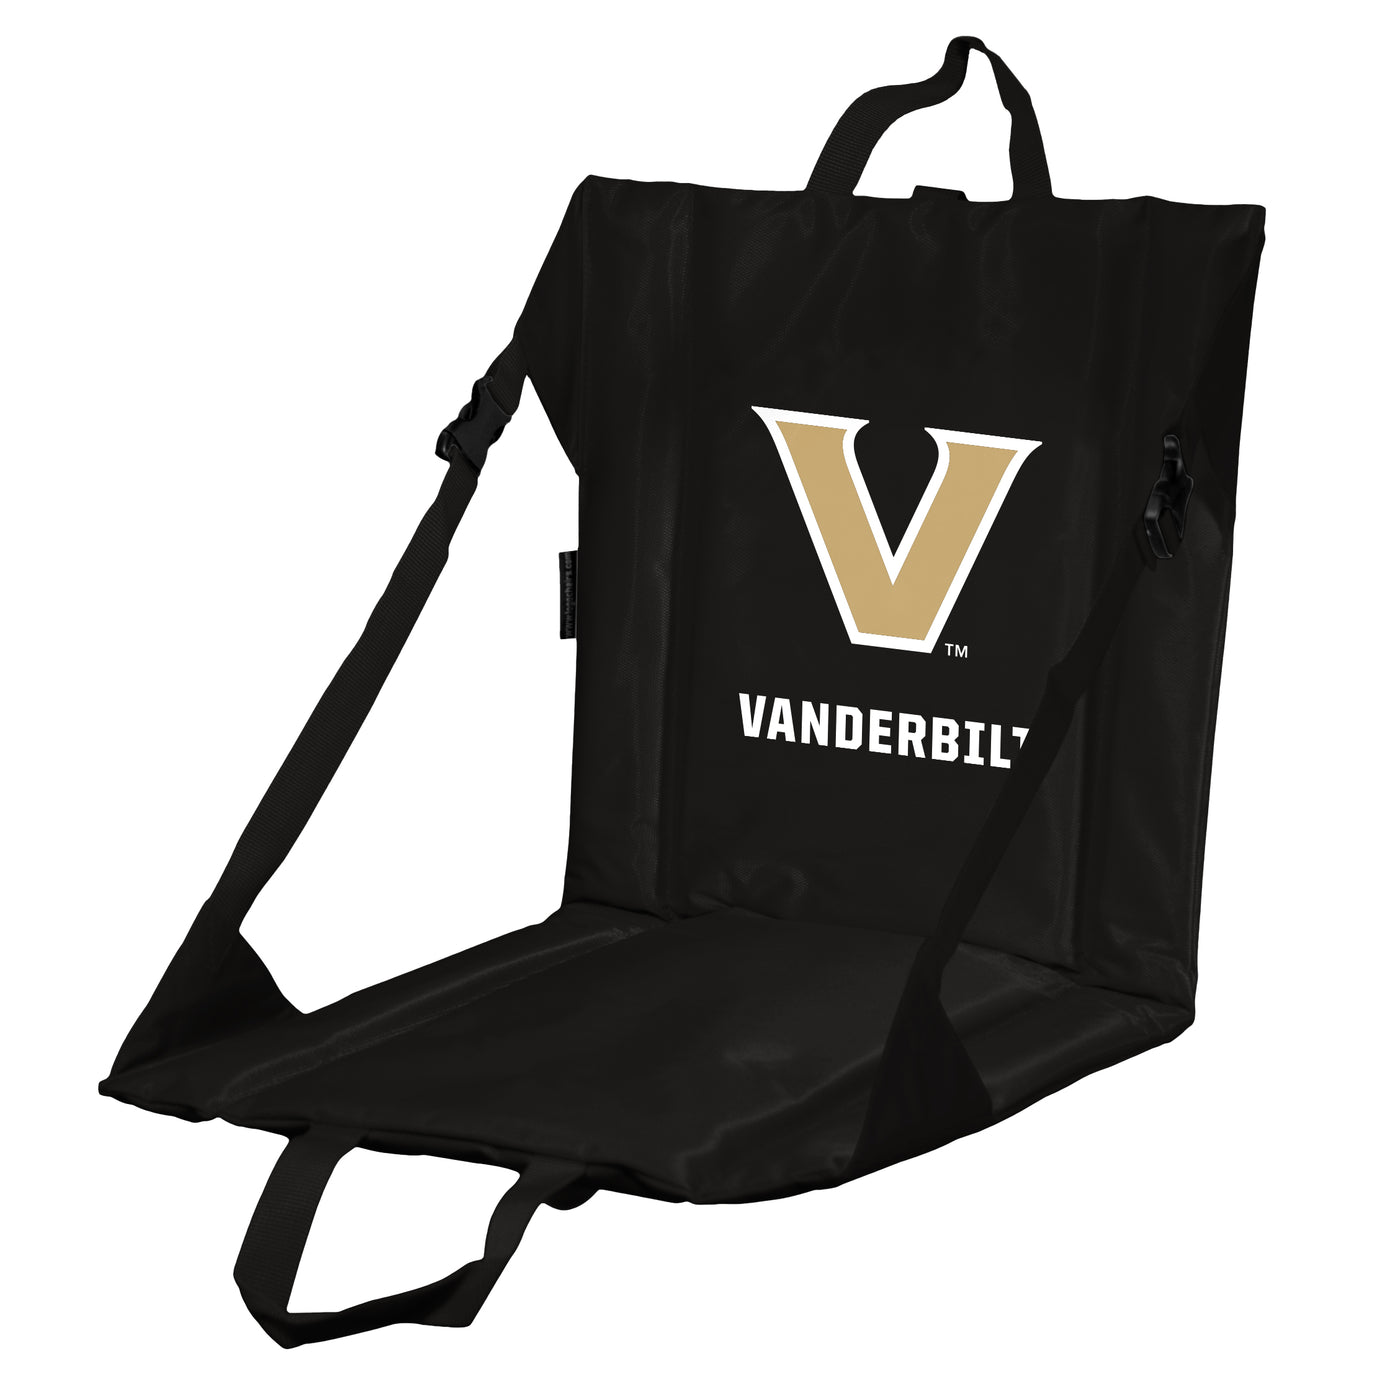 Vanderbilt Stadium Seat